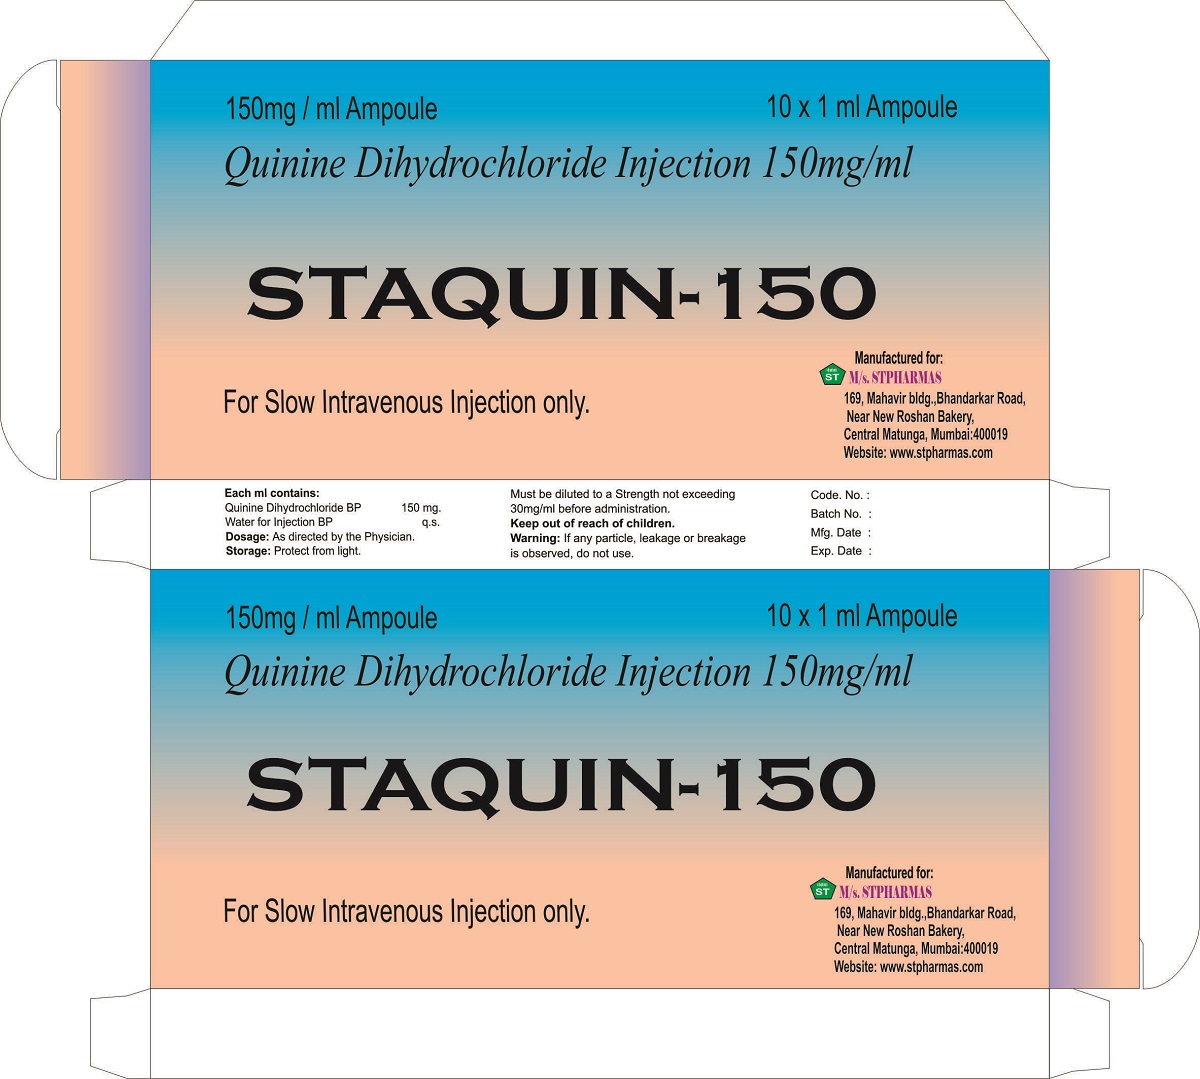 STAQUIN-150